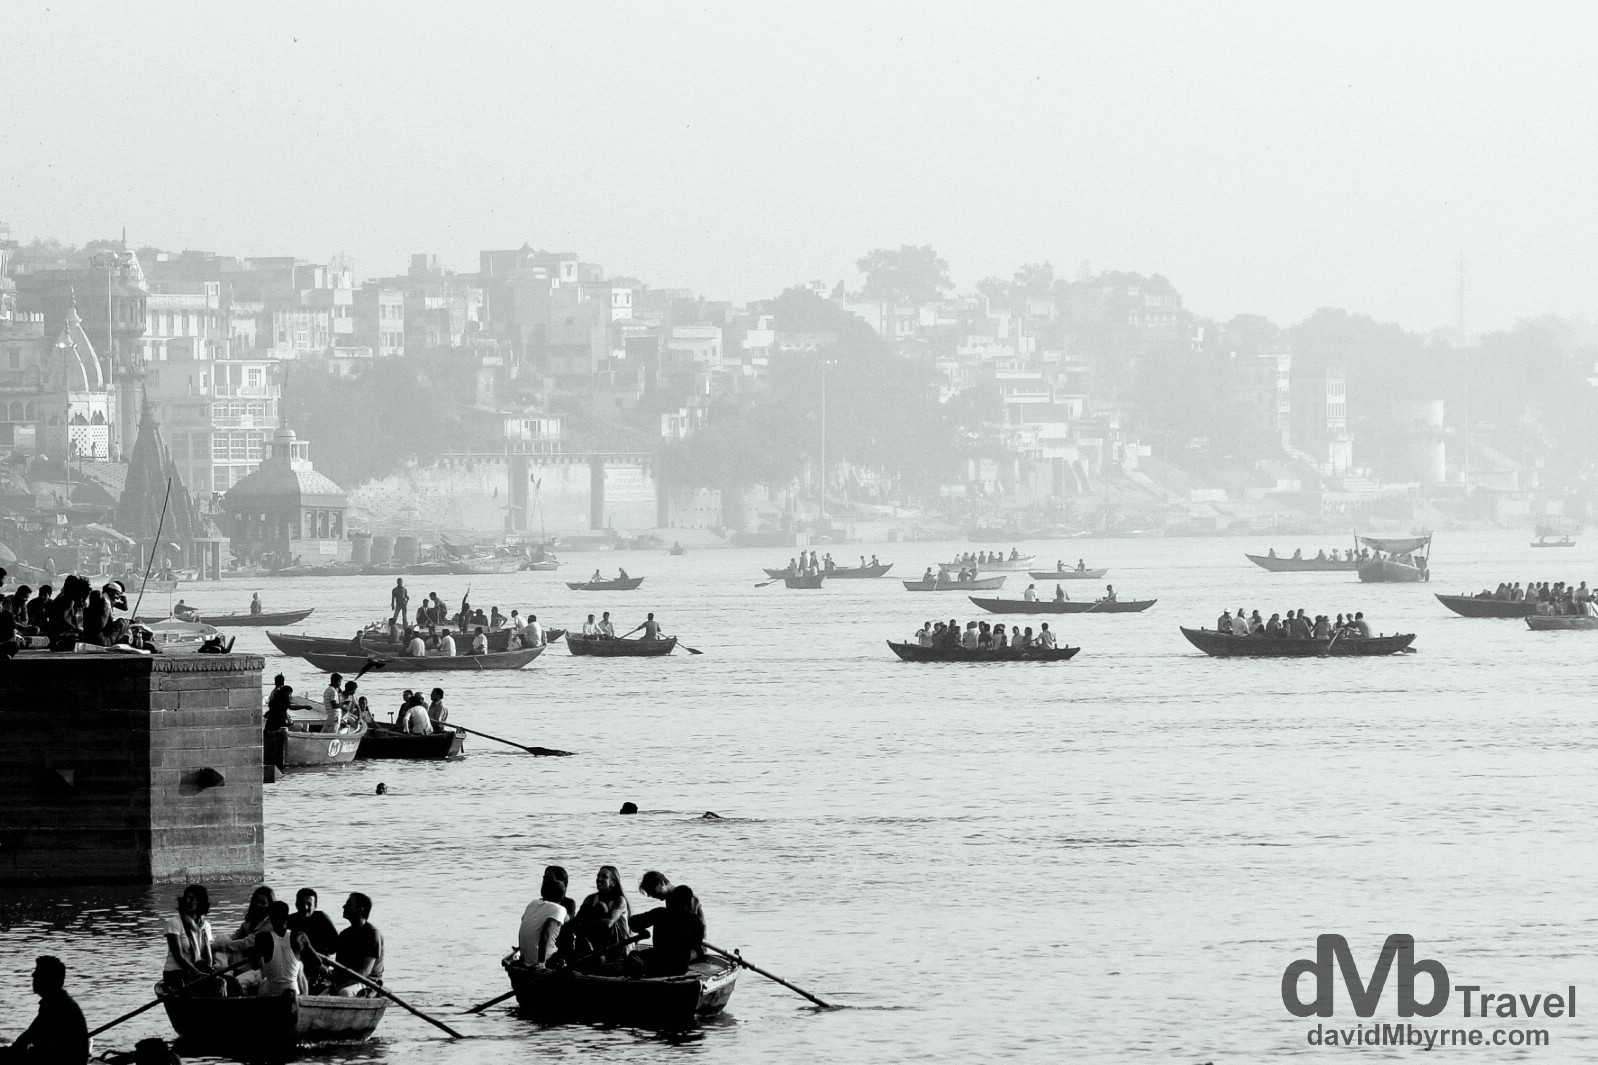 Boats on the Ganges River in Varanasi, Uttar Pradesh, India. October 14th 2012.